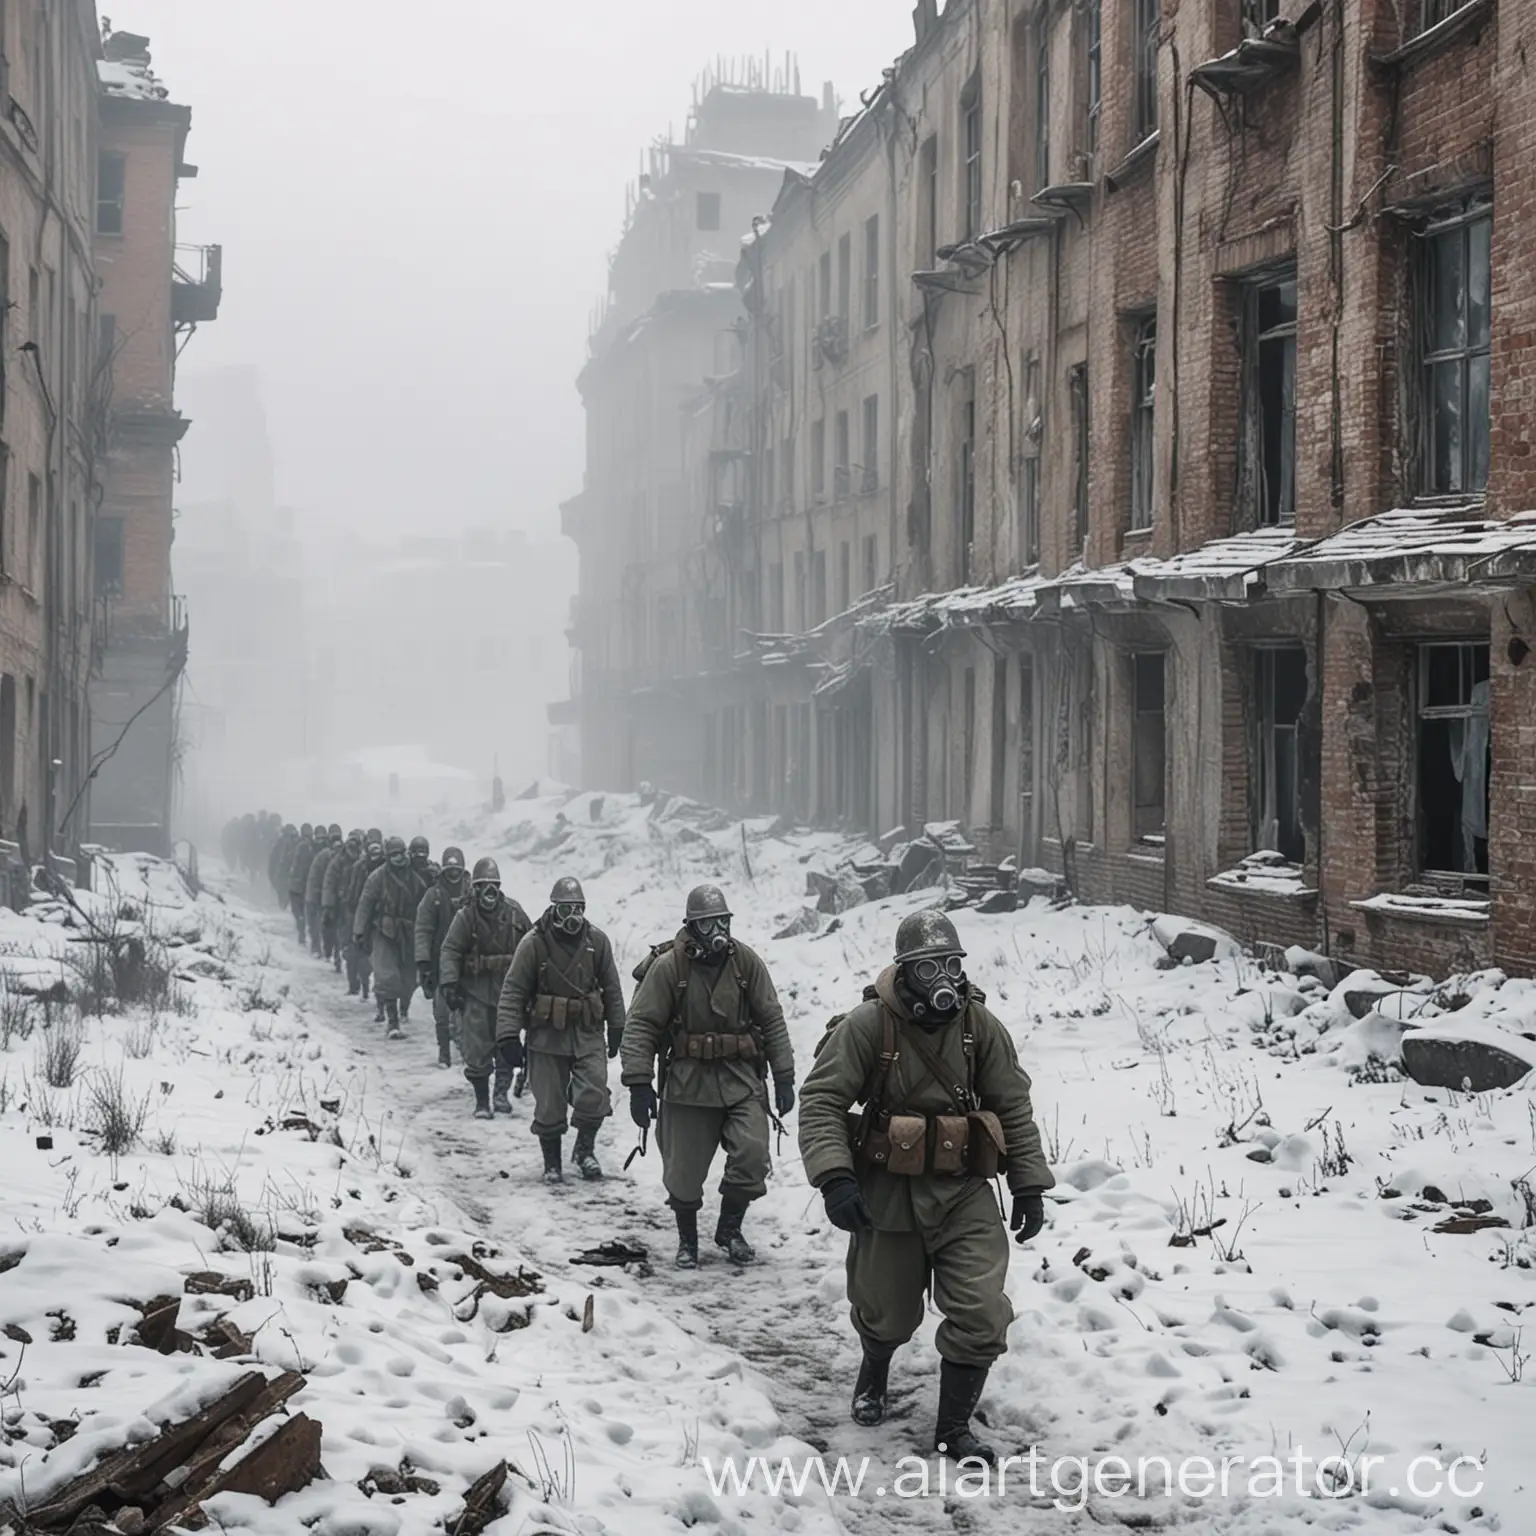 строй русских солдат в противогазах, зима, туман, сломанные здания, вид сверху сбоку, много снега,поношенная форма второй мировой